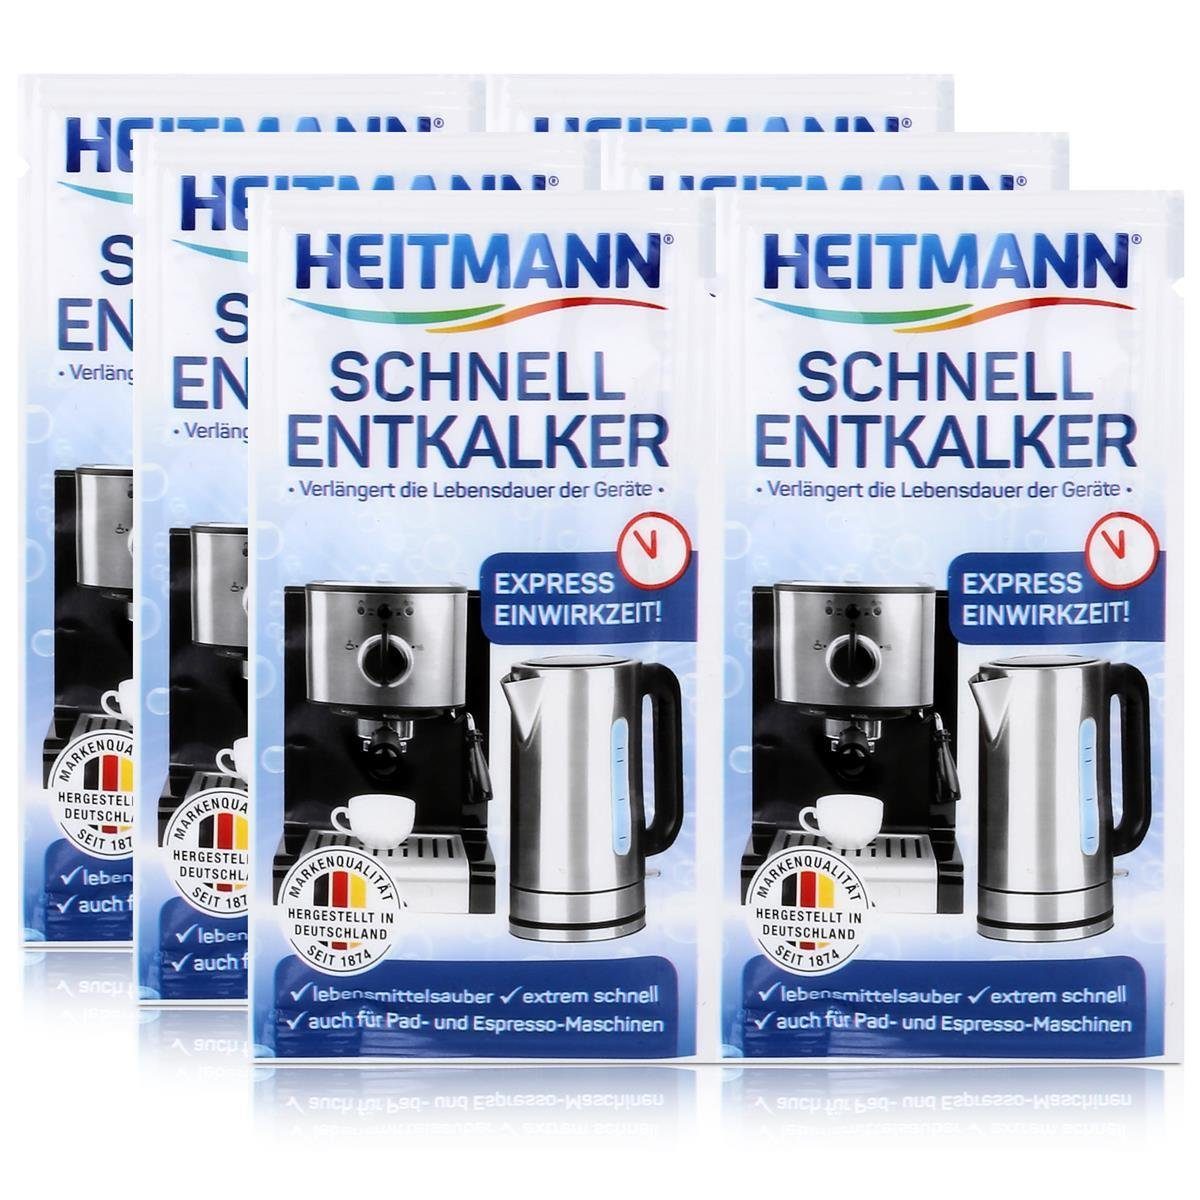 HEITMANN Heitmann Schnell-Entkalker 2x15g - Natürlicher Universalentkalker (3er Entkalker